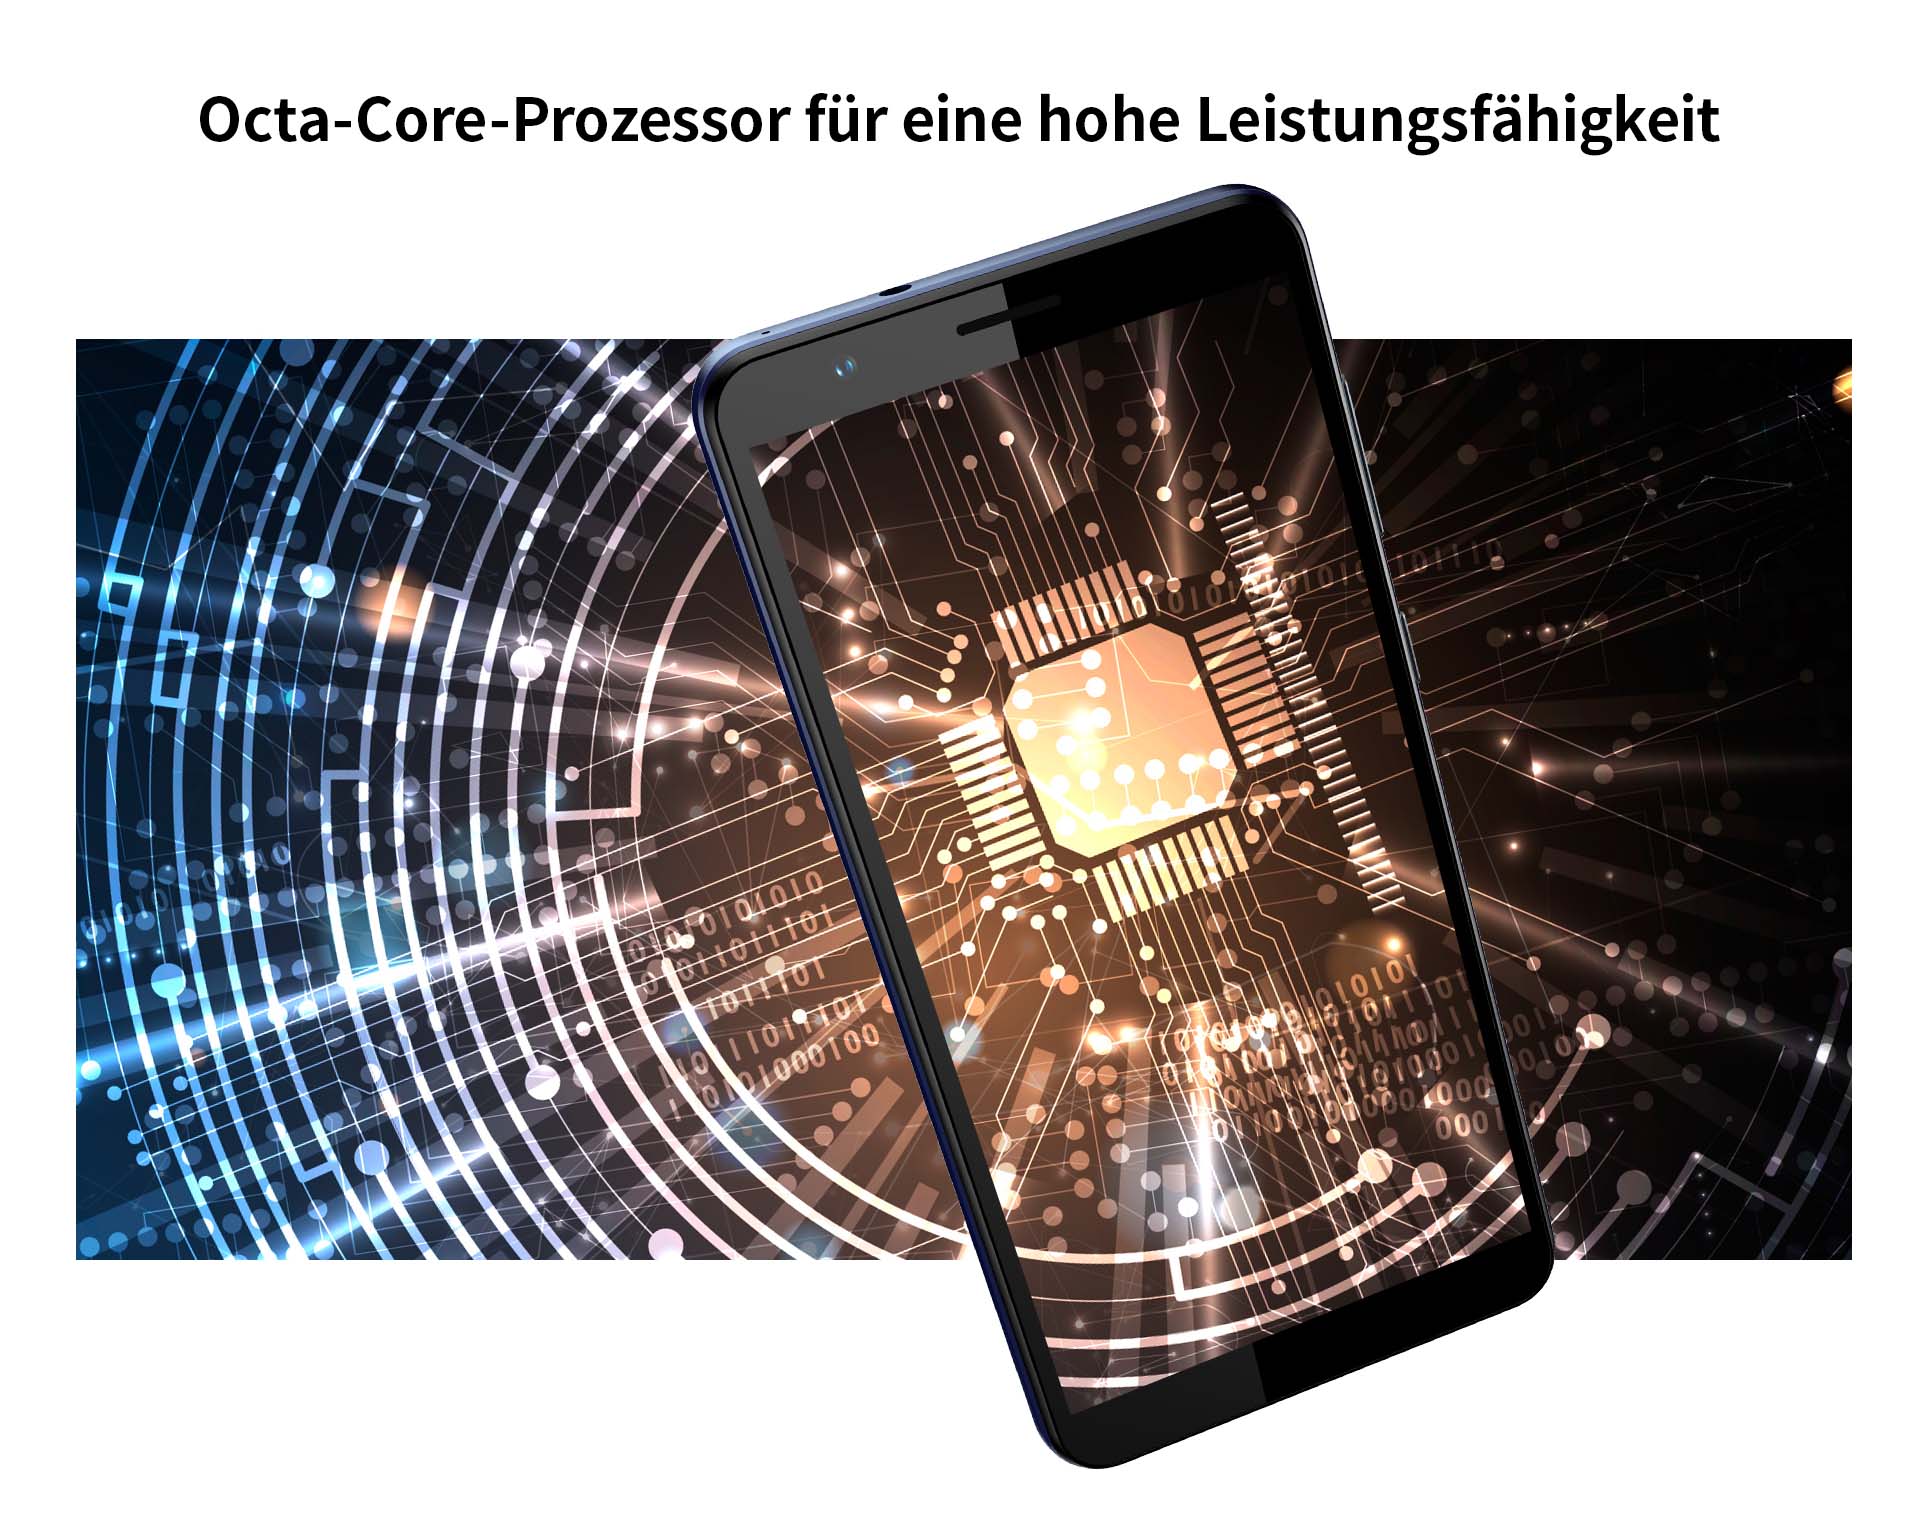 Octa-Core Prozessor für eine hohe Leistungsfähigkeit